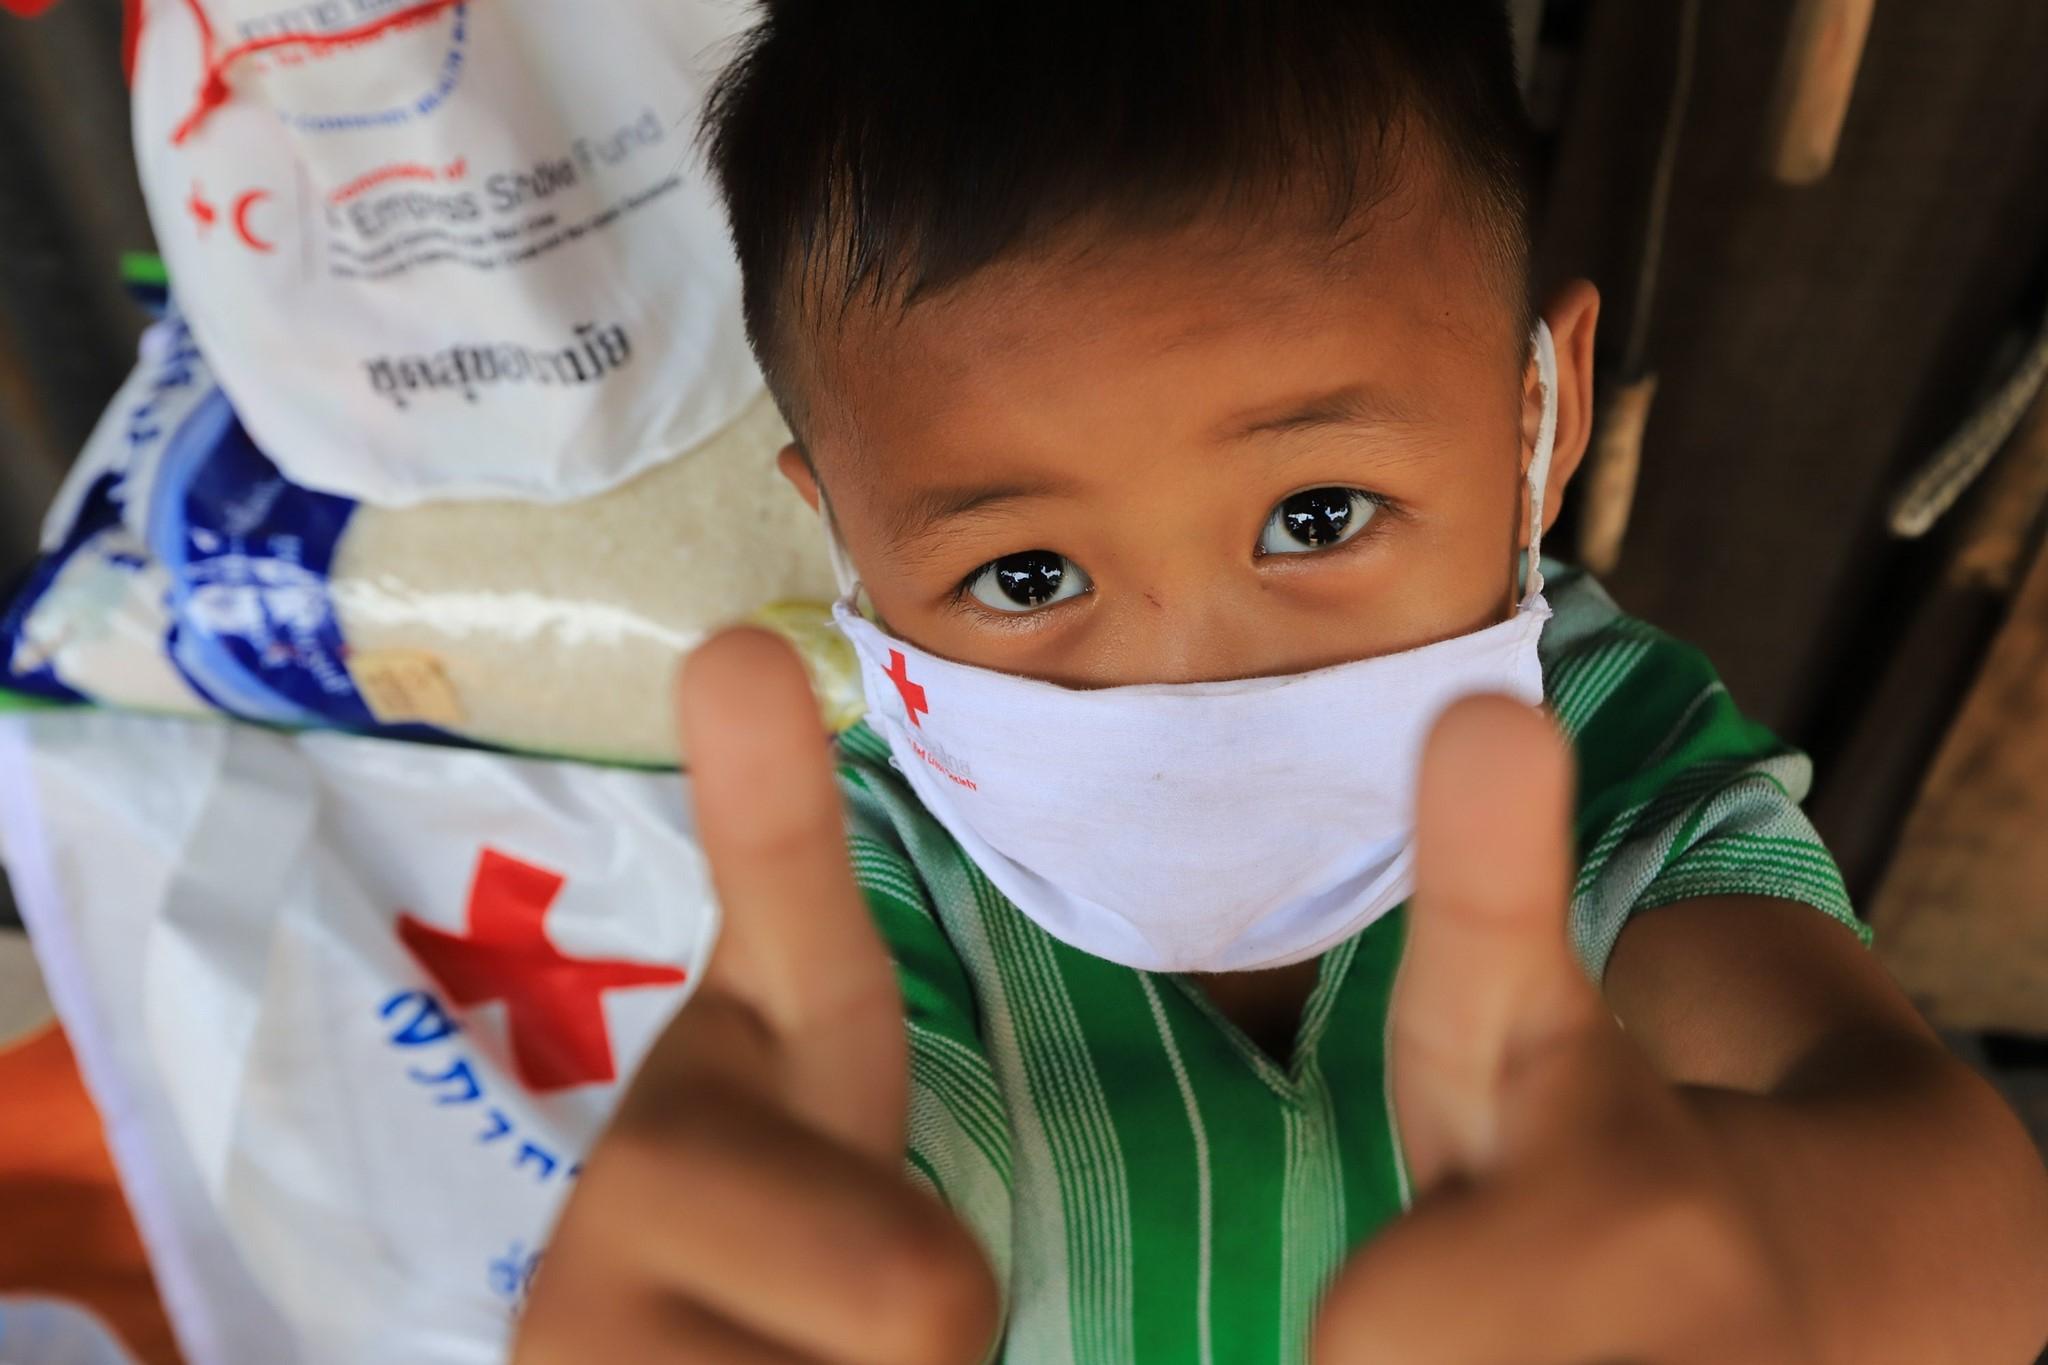 Ein kleiner Junge lächelt hinter seiner Maske mit dem Logo des Roten Kreuzes. Er hält beide Daumen hoch. Im Hintergrund steht eine Ladung Reis mit dem Emblem des Roten Kreuzes auf dem Tisch.  